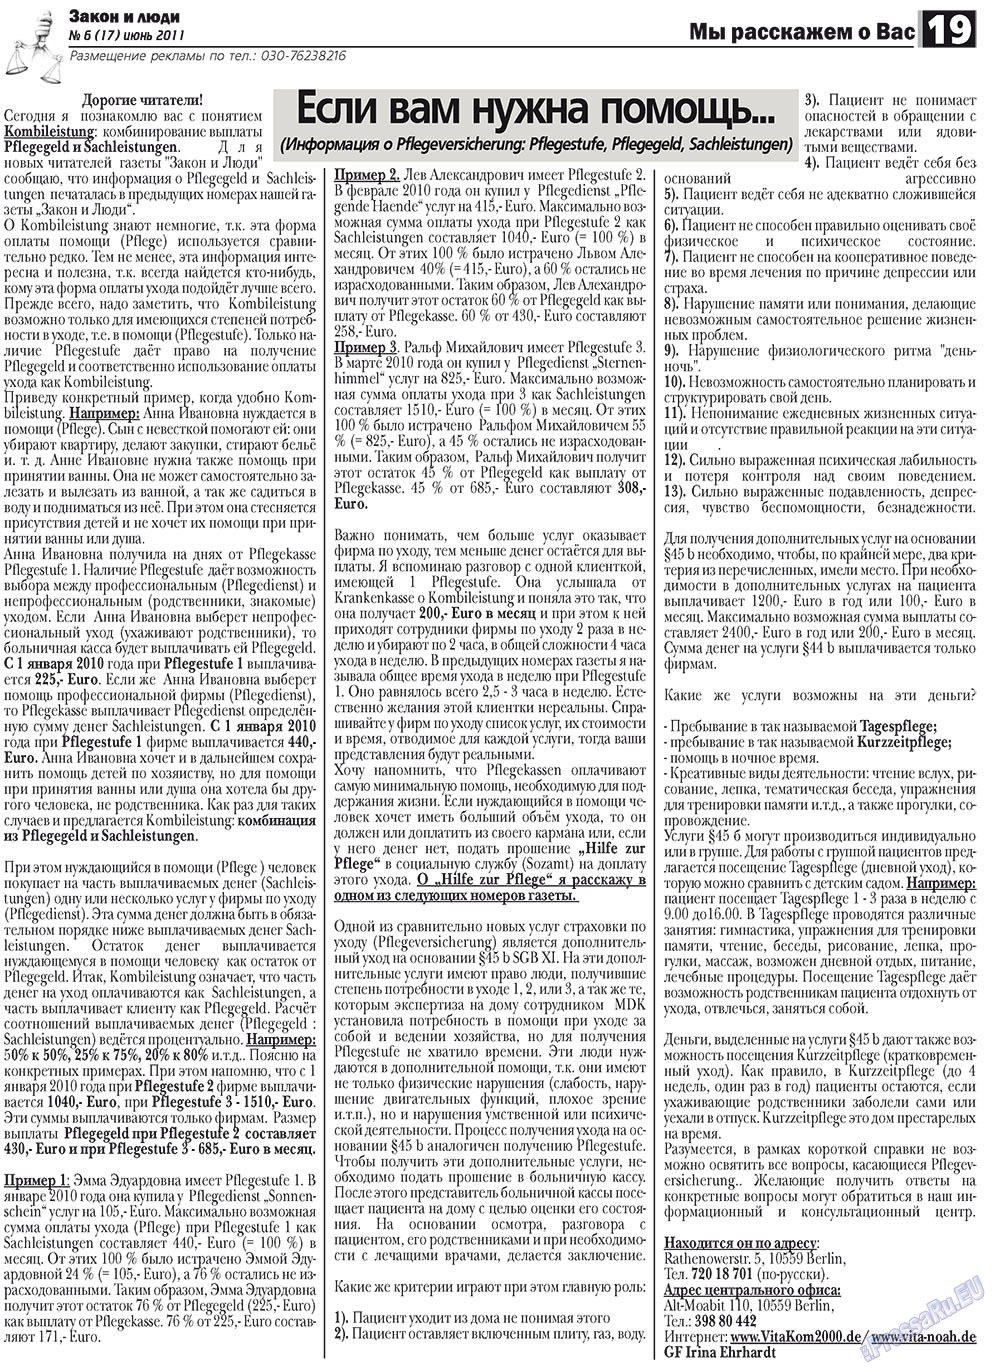 Закон и люди, газета. 2011 №6 стр.19